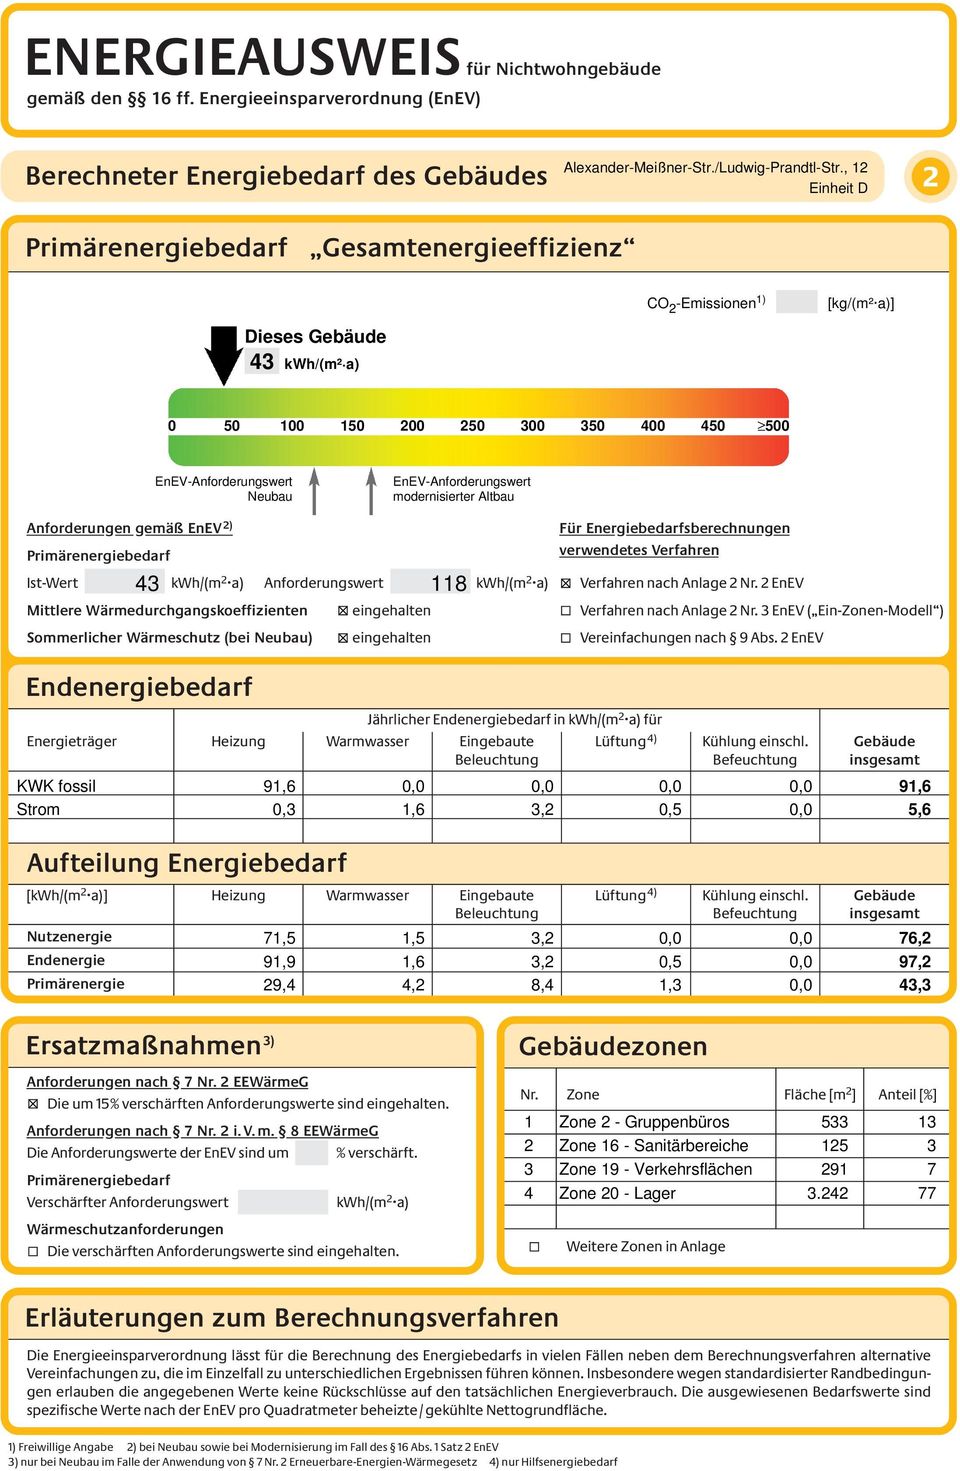 Altbau Anforderungen gemäß EnEV 2) 43 118 Ist-Wert kwh/(m 2 a) Anforderungswert kwh/(m 2 a) Mittlere Wärmedurchgangskoeffizienten eingehalten Für Energiebedarfsberechnungen verwendetes Verfahren